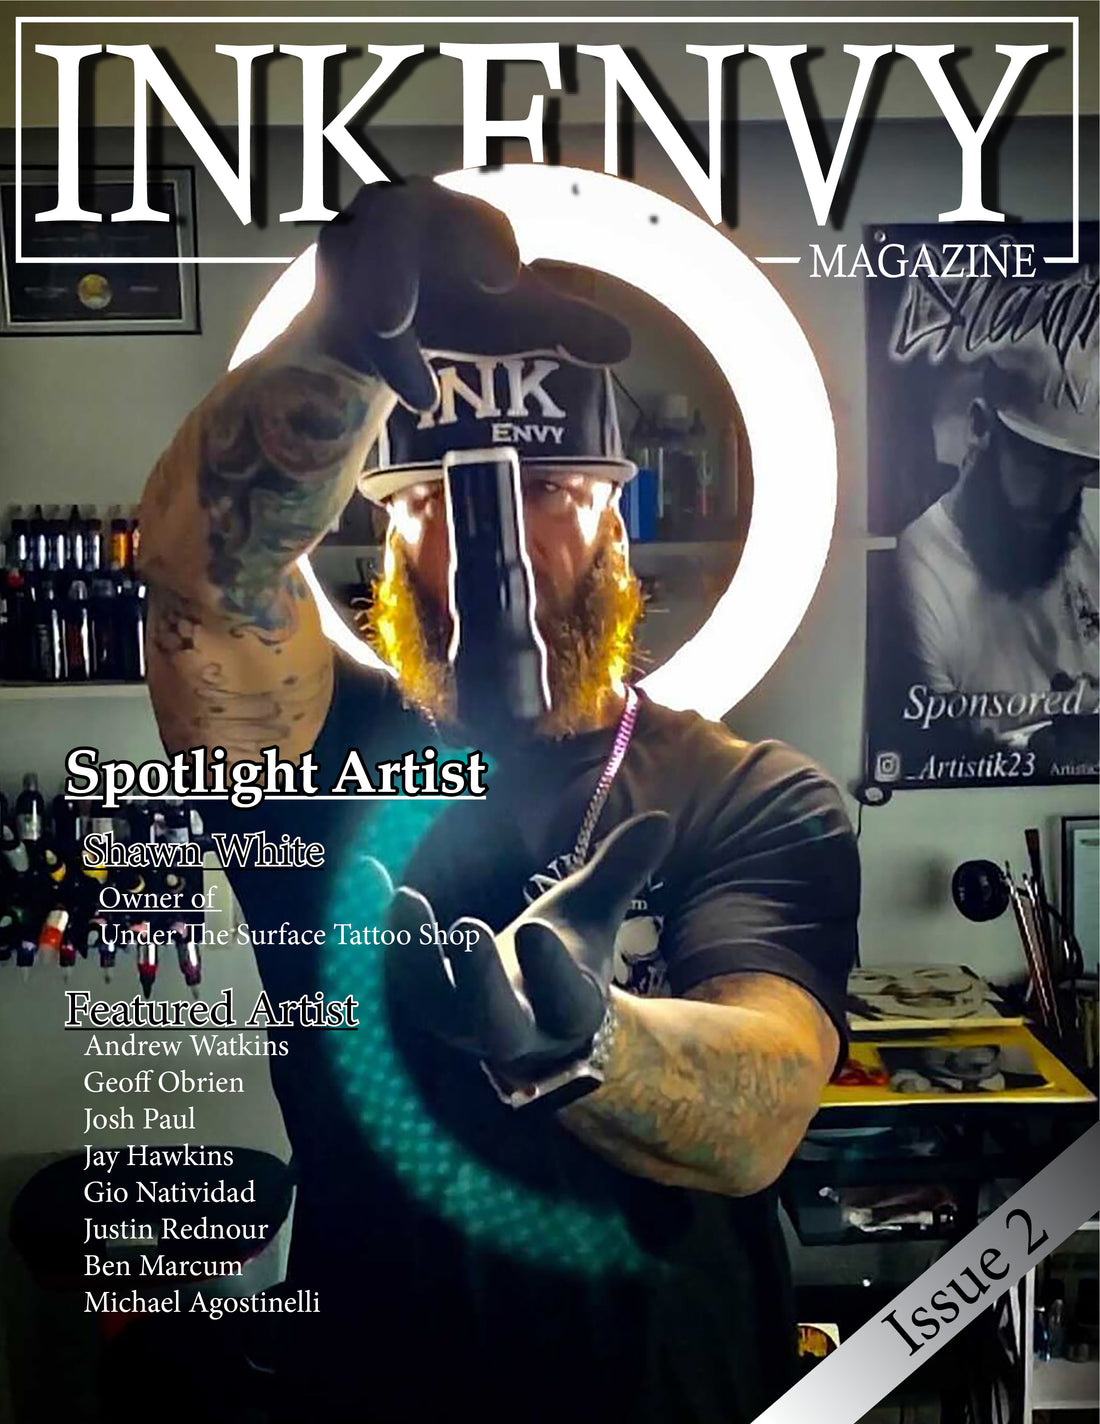 INKENVY Magazine Issue 2 (Shawn White)